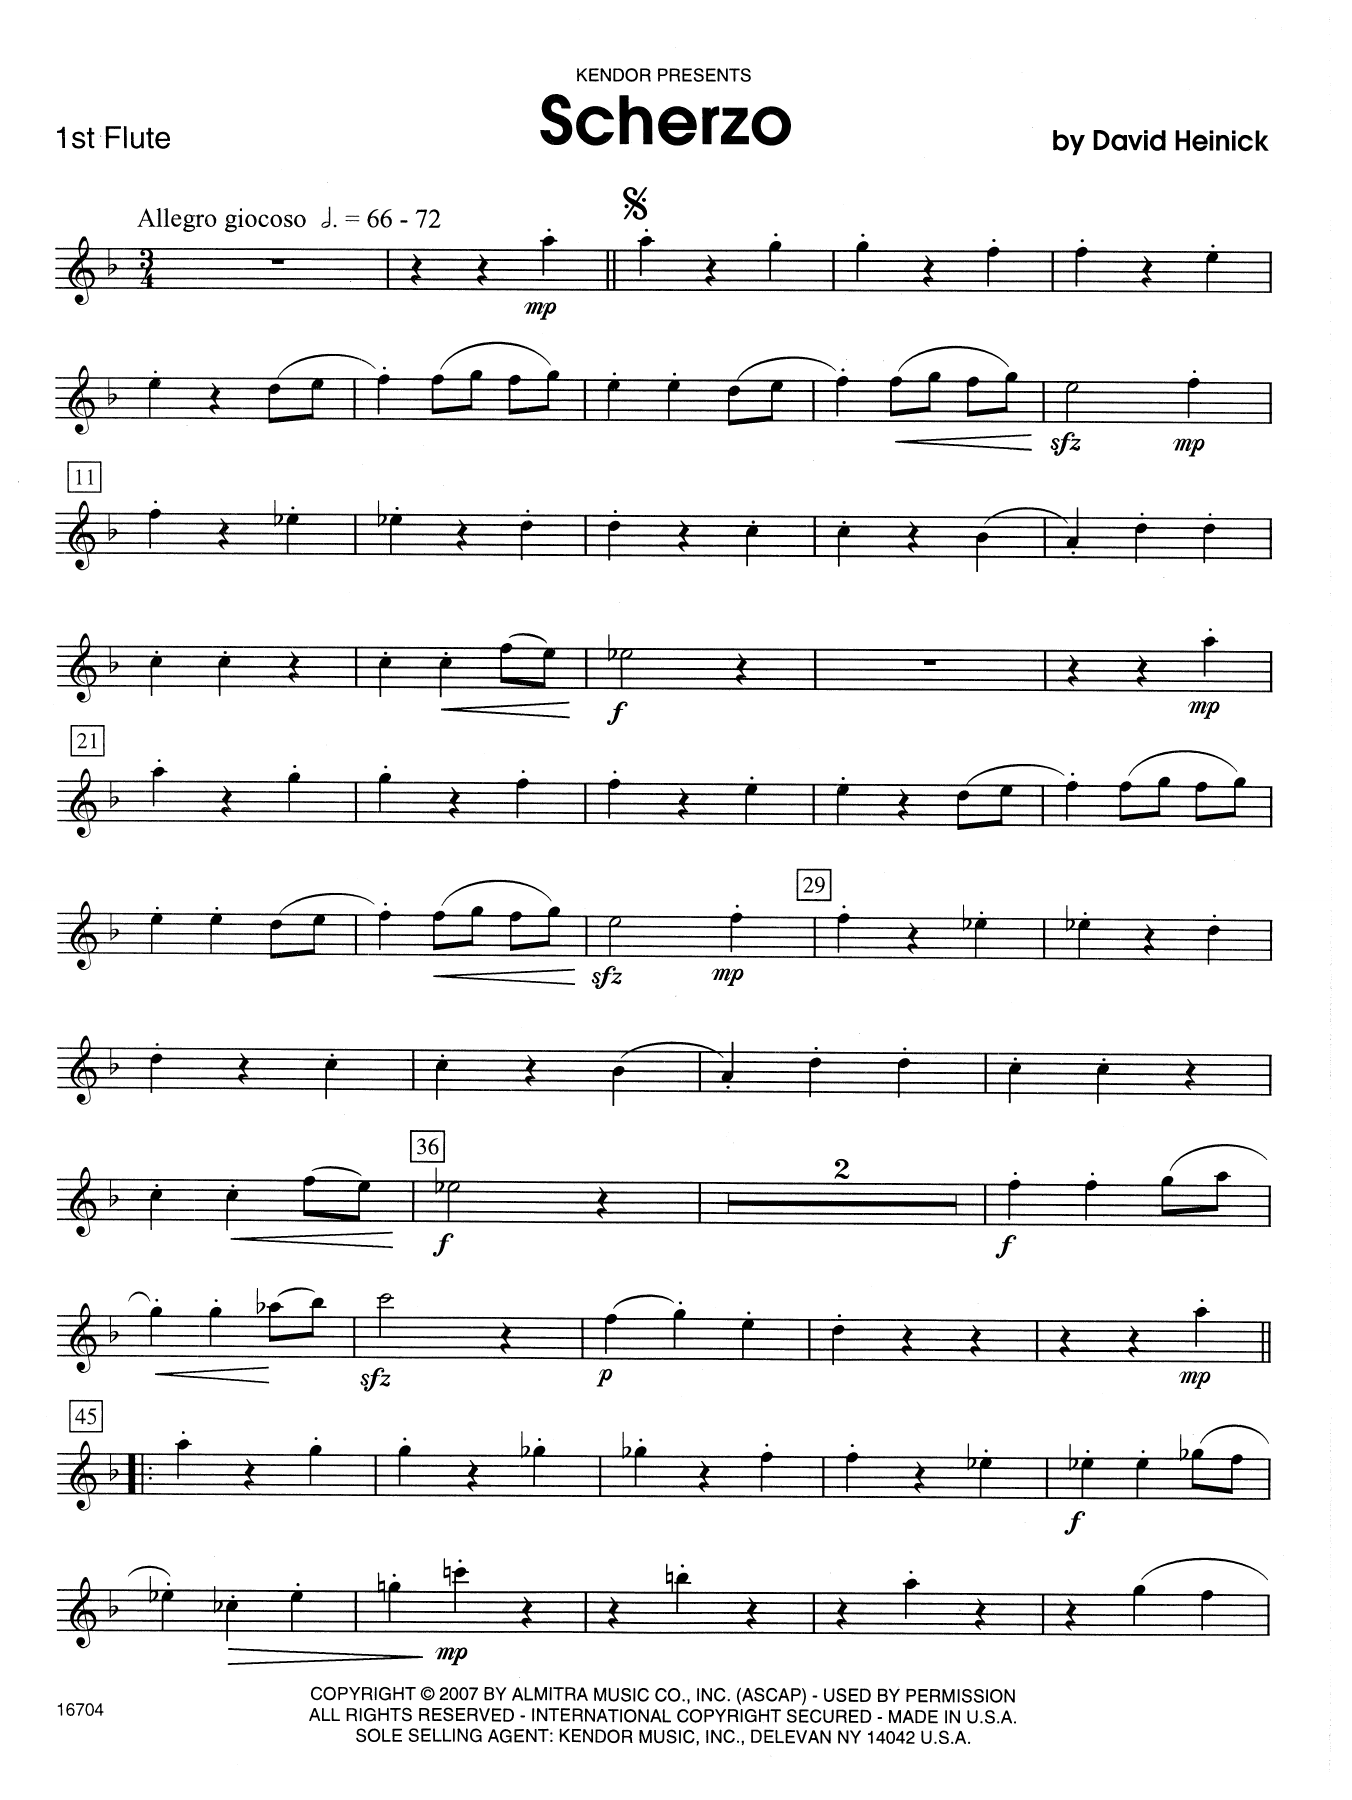 Download David Heinick Scherzo - 1st Flute Sheet Music